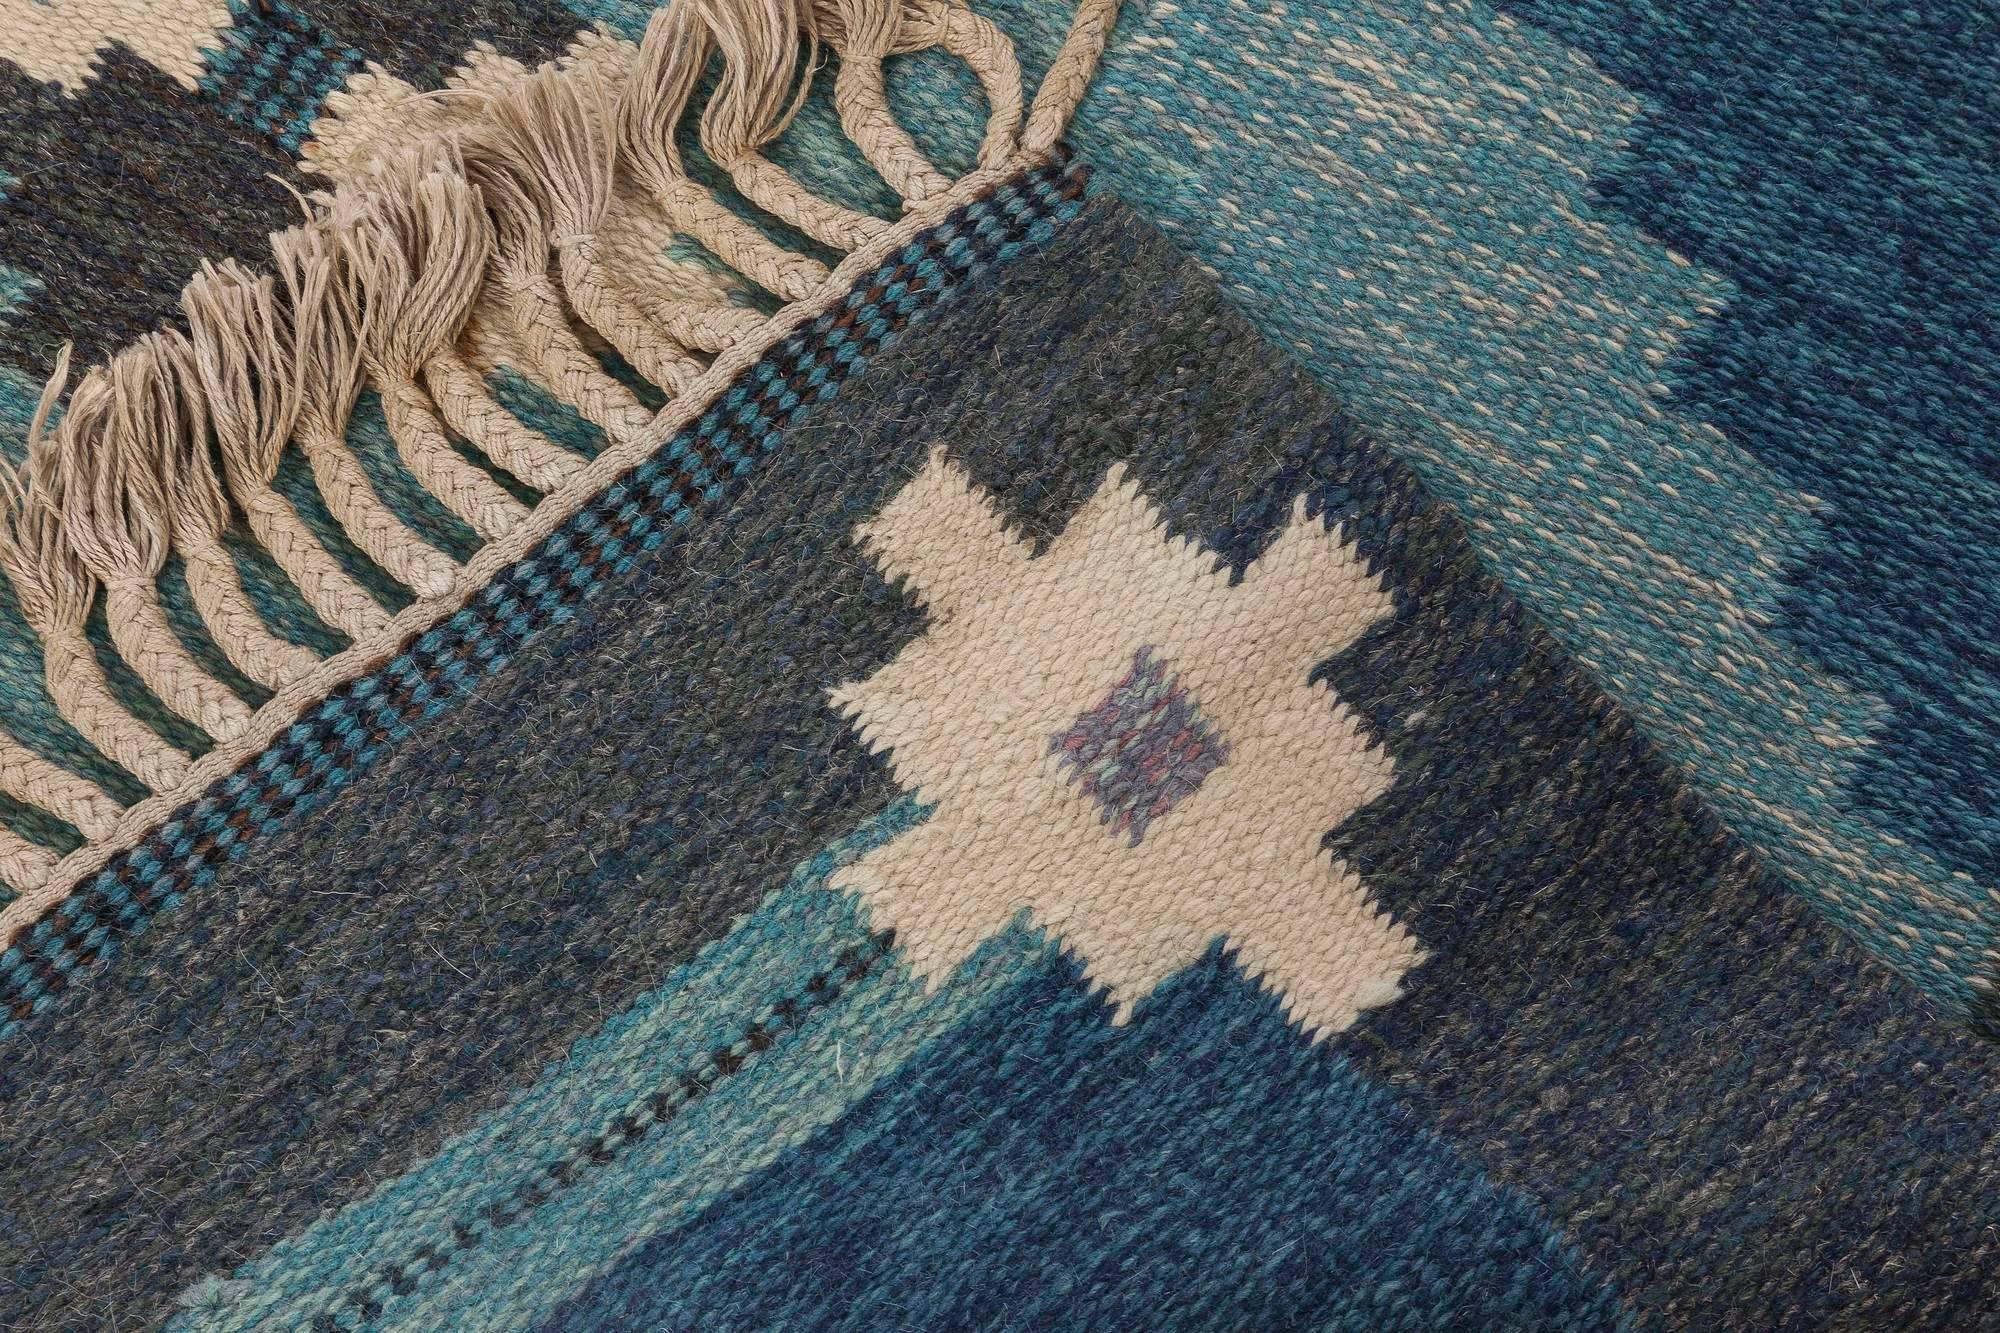 Wool Midcentury Swedish Blue Flat-weave Rug by Ingegerd Silow at Doris Leslie Blau